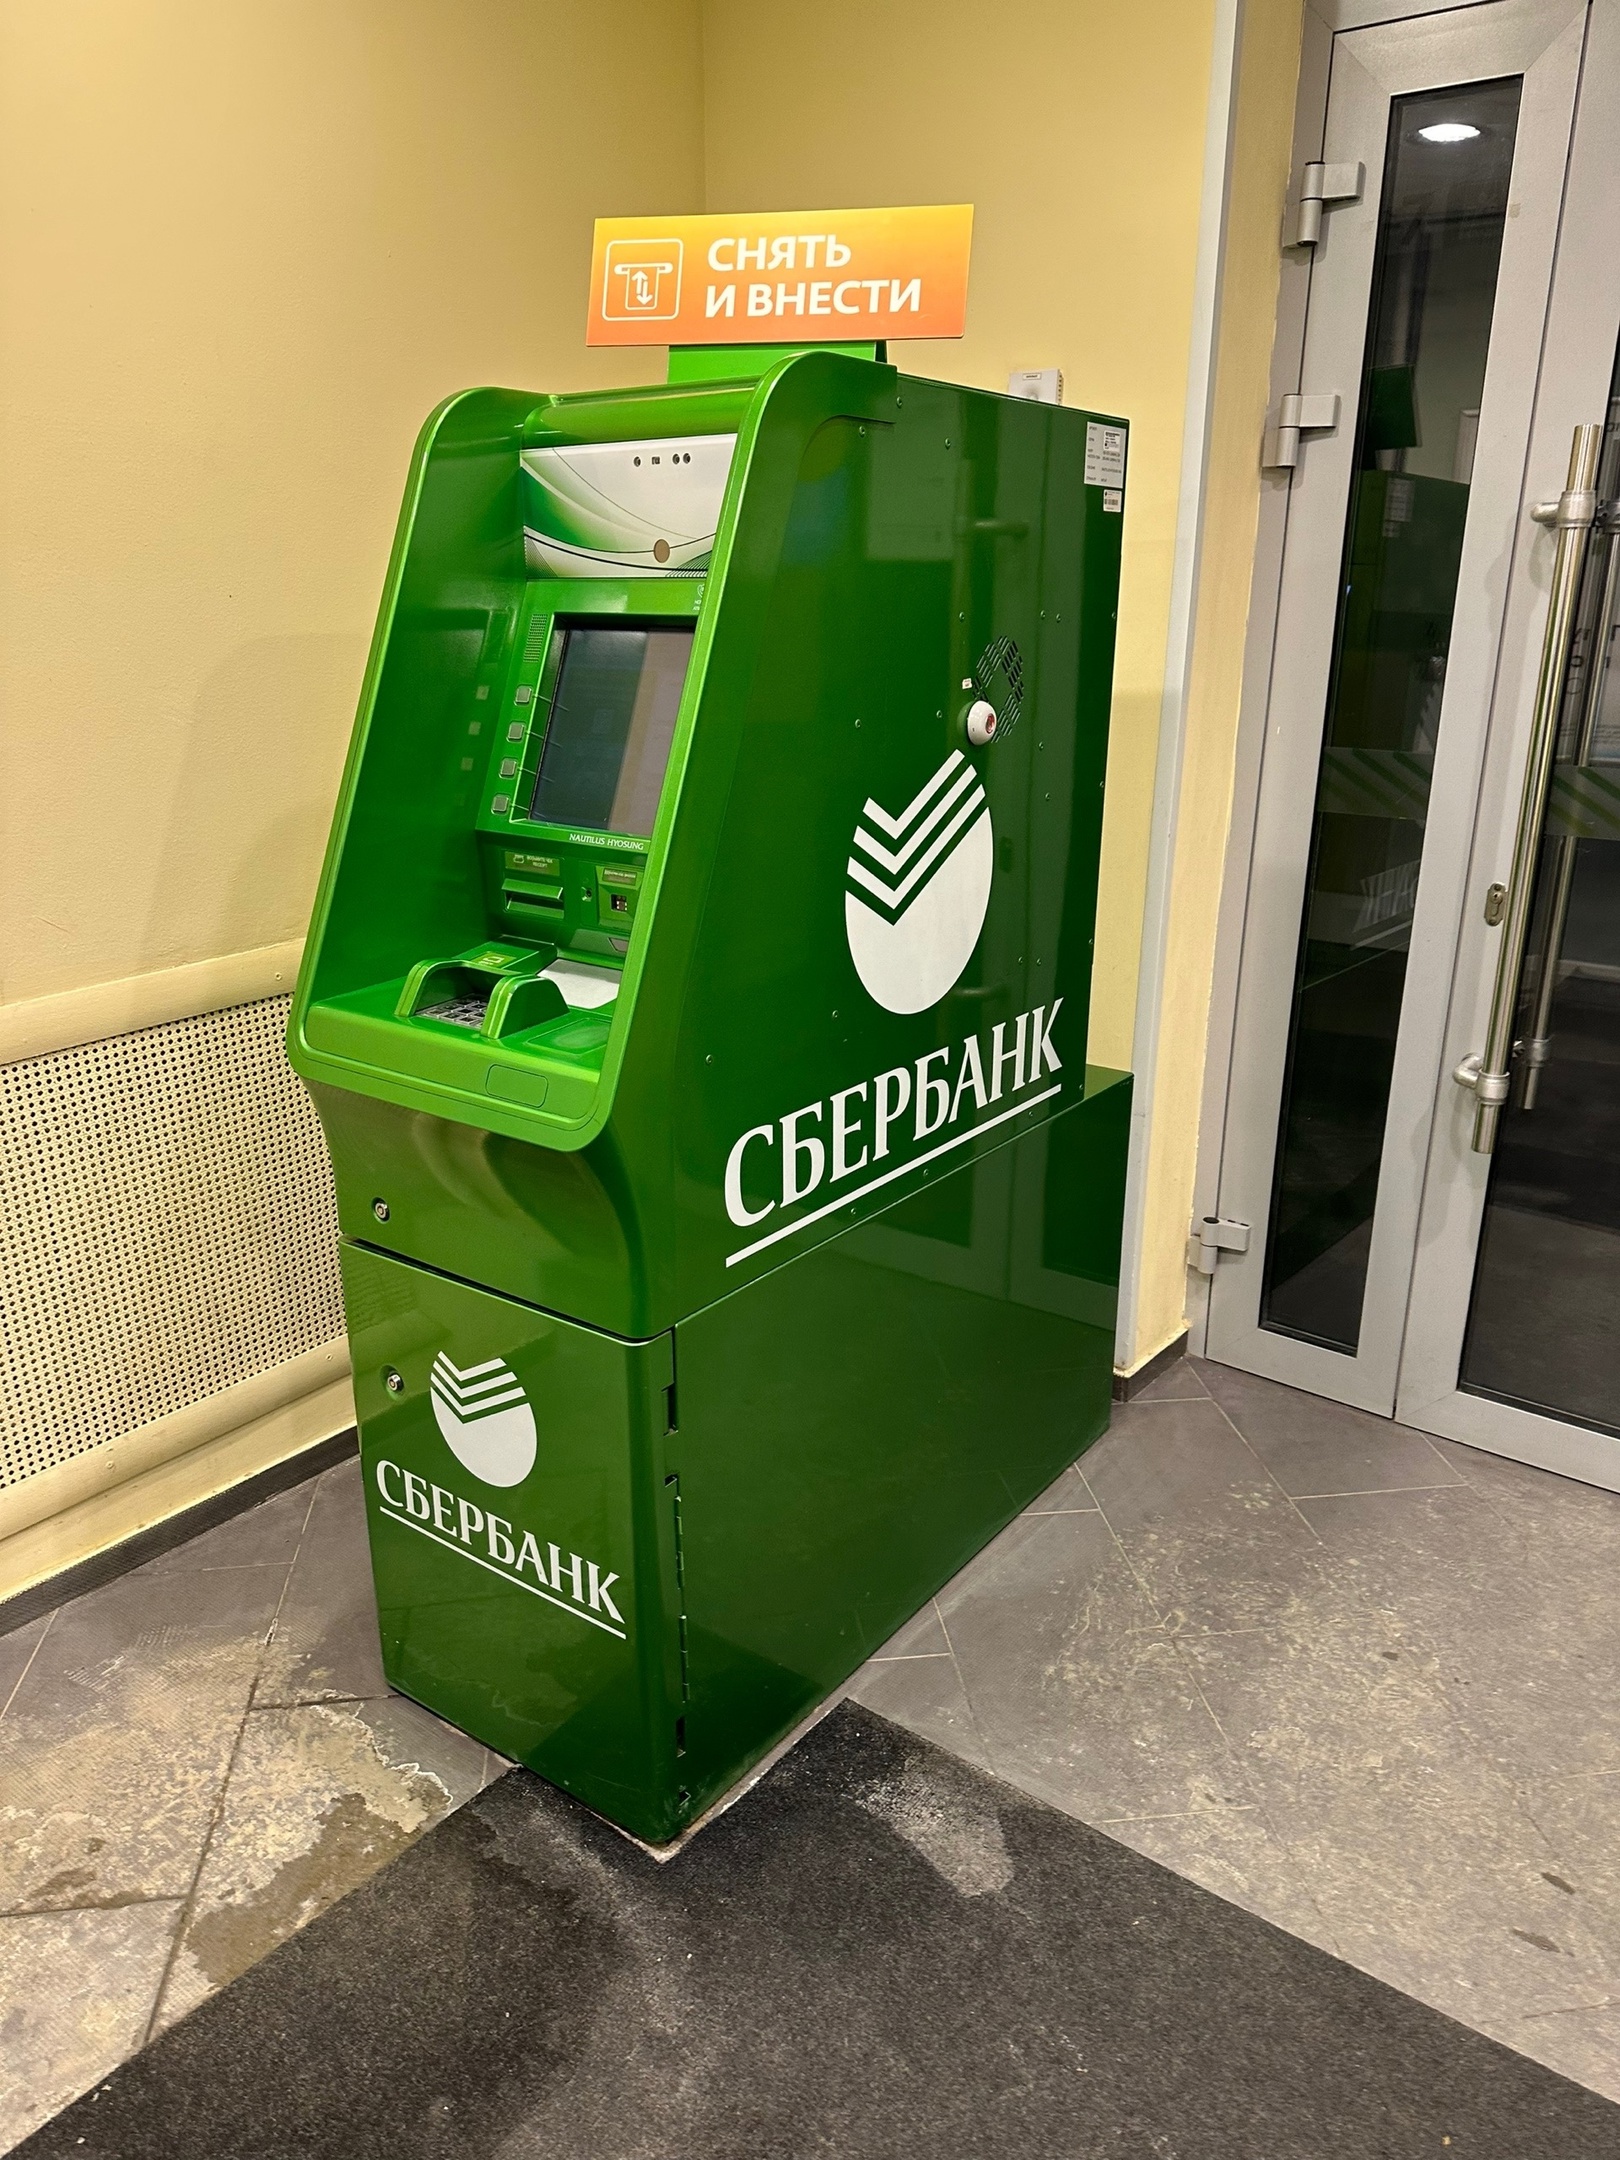 Важные новости пришли из Сбербанка: начиная с 16 июля, все владельцы банковских карт останутся без рубля с 19 июля